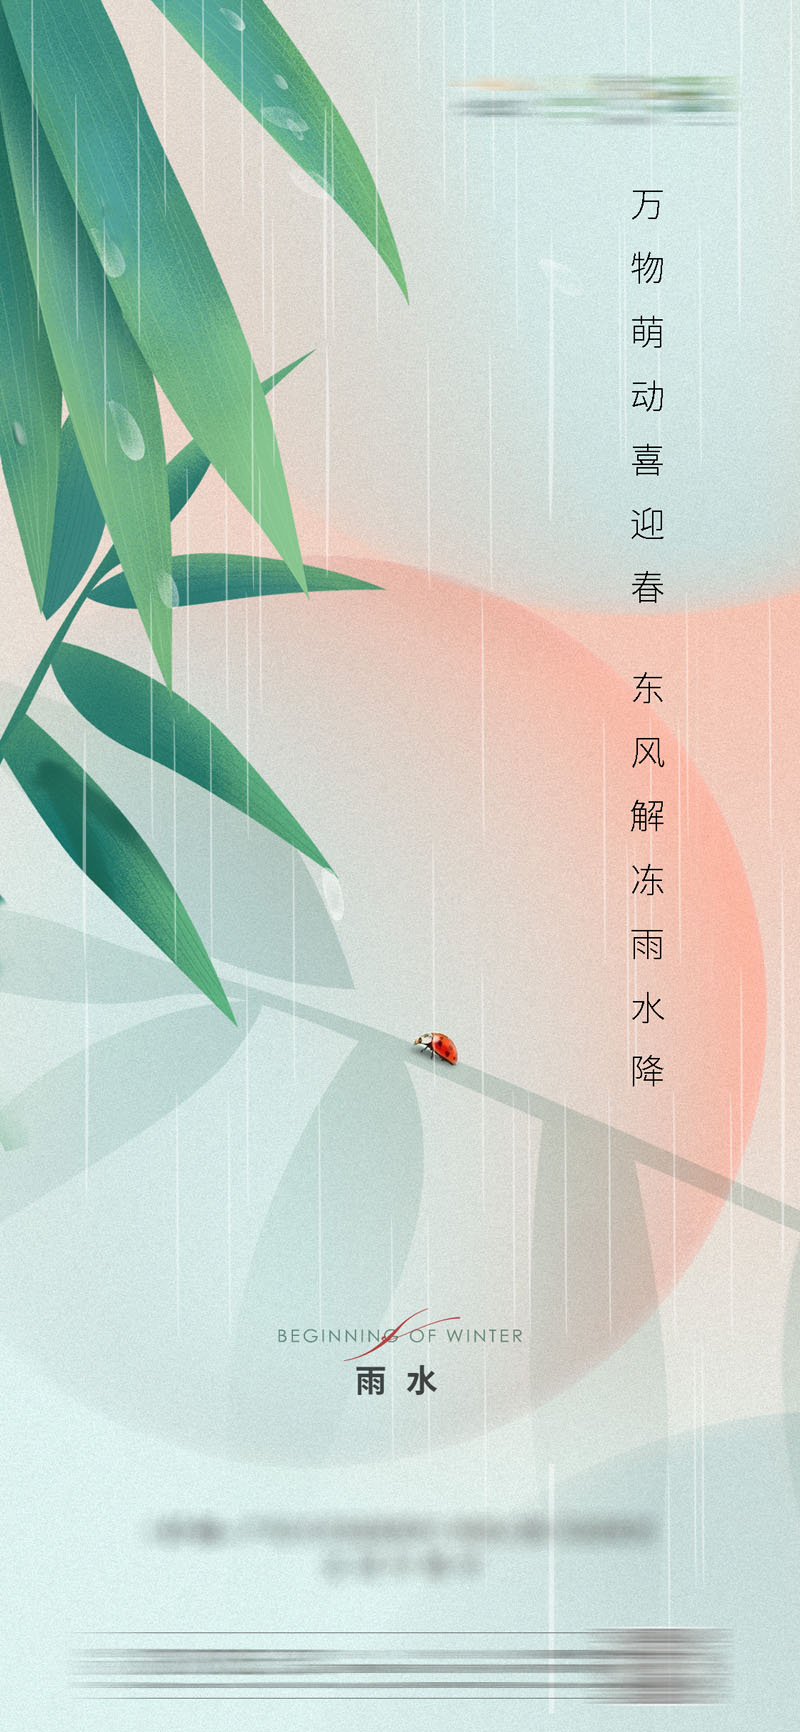 43款24节气雨水春天节日宣传海报模板PSD设计素材 设计素材 第2张